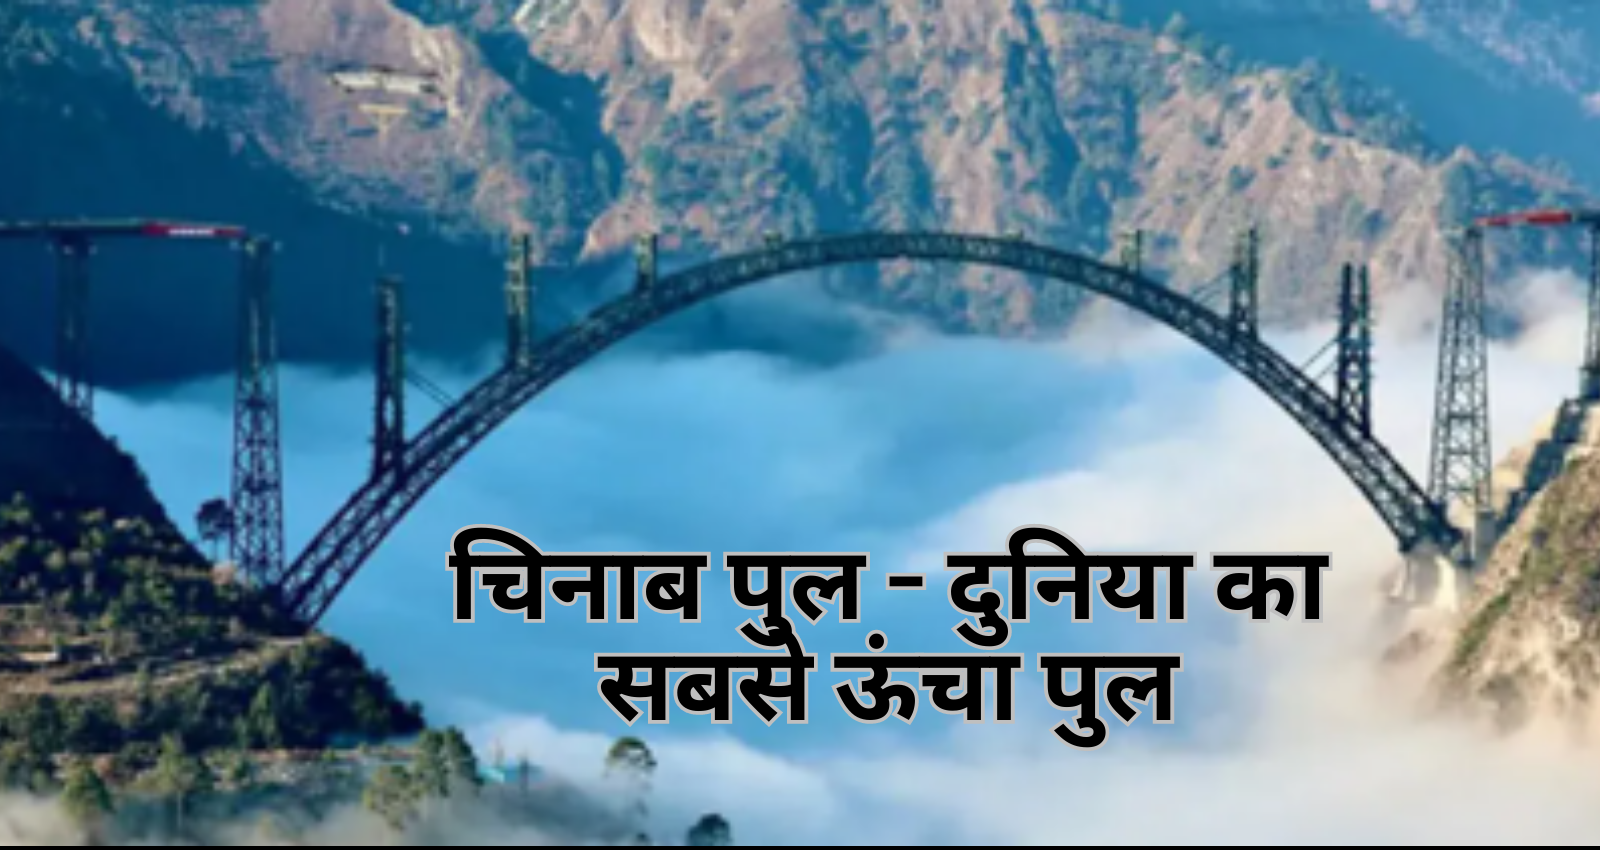 The Chenab Bridge in hindi